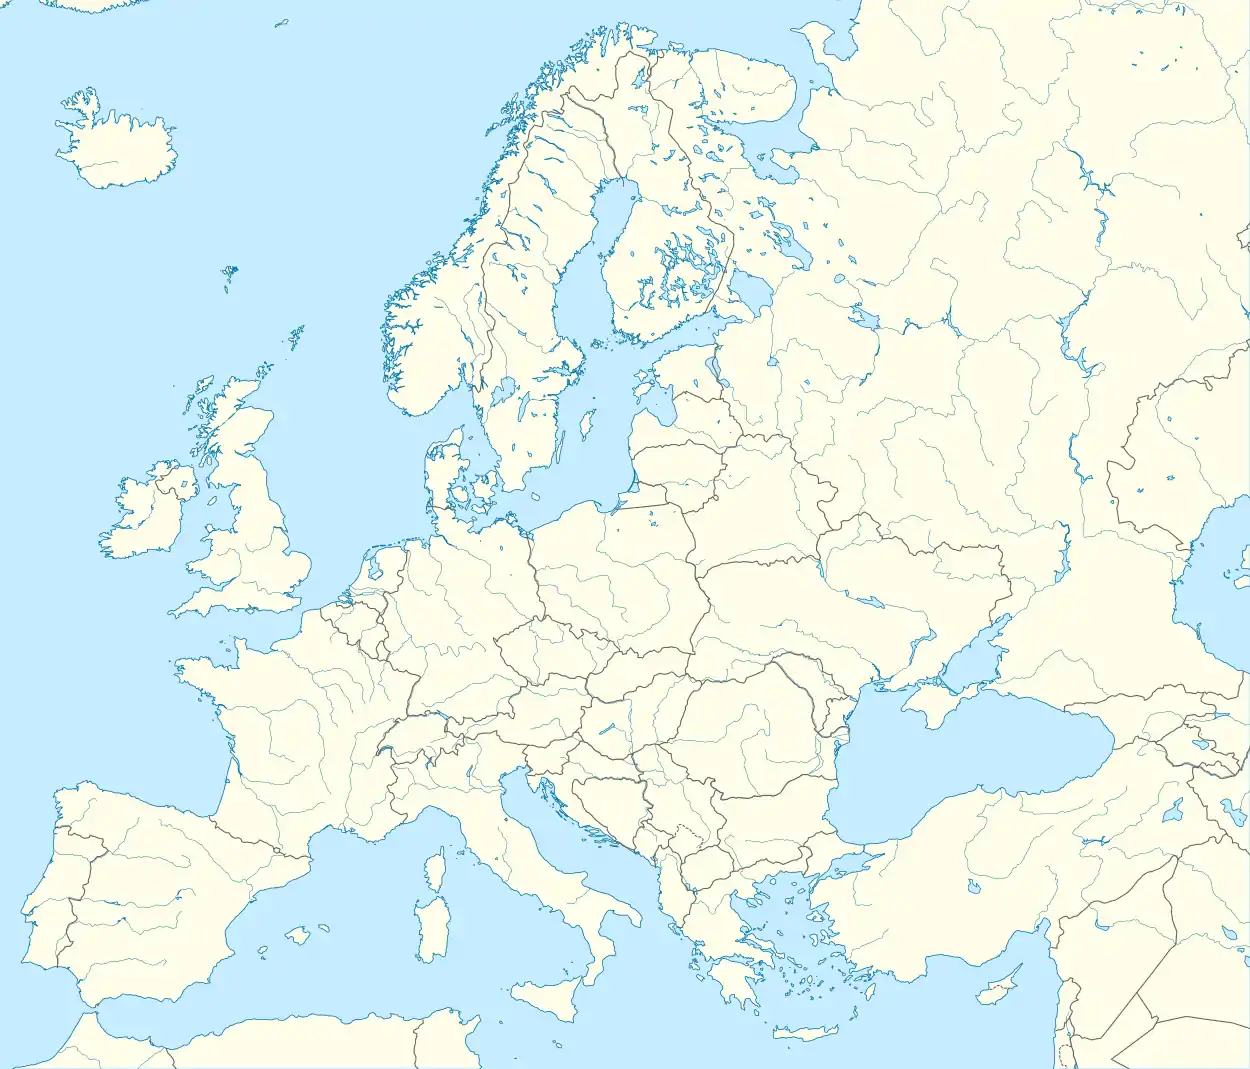 voir sur la carte d’Europe